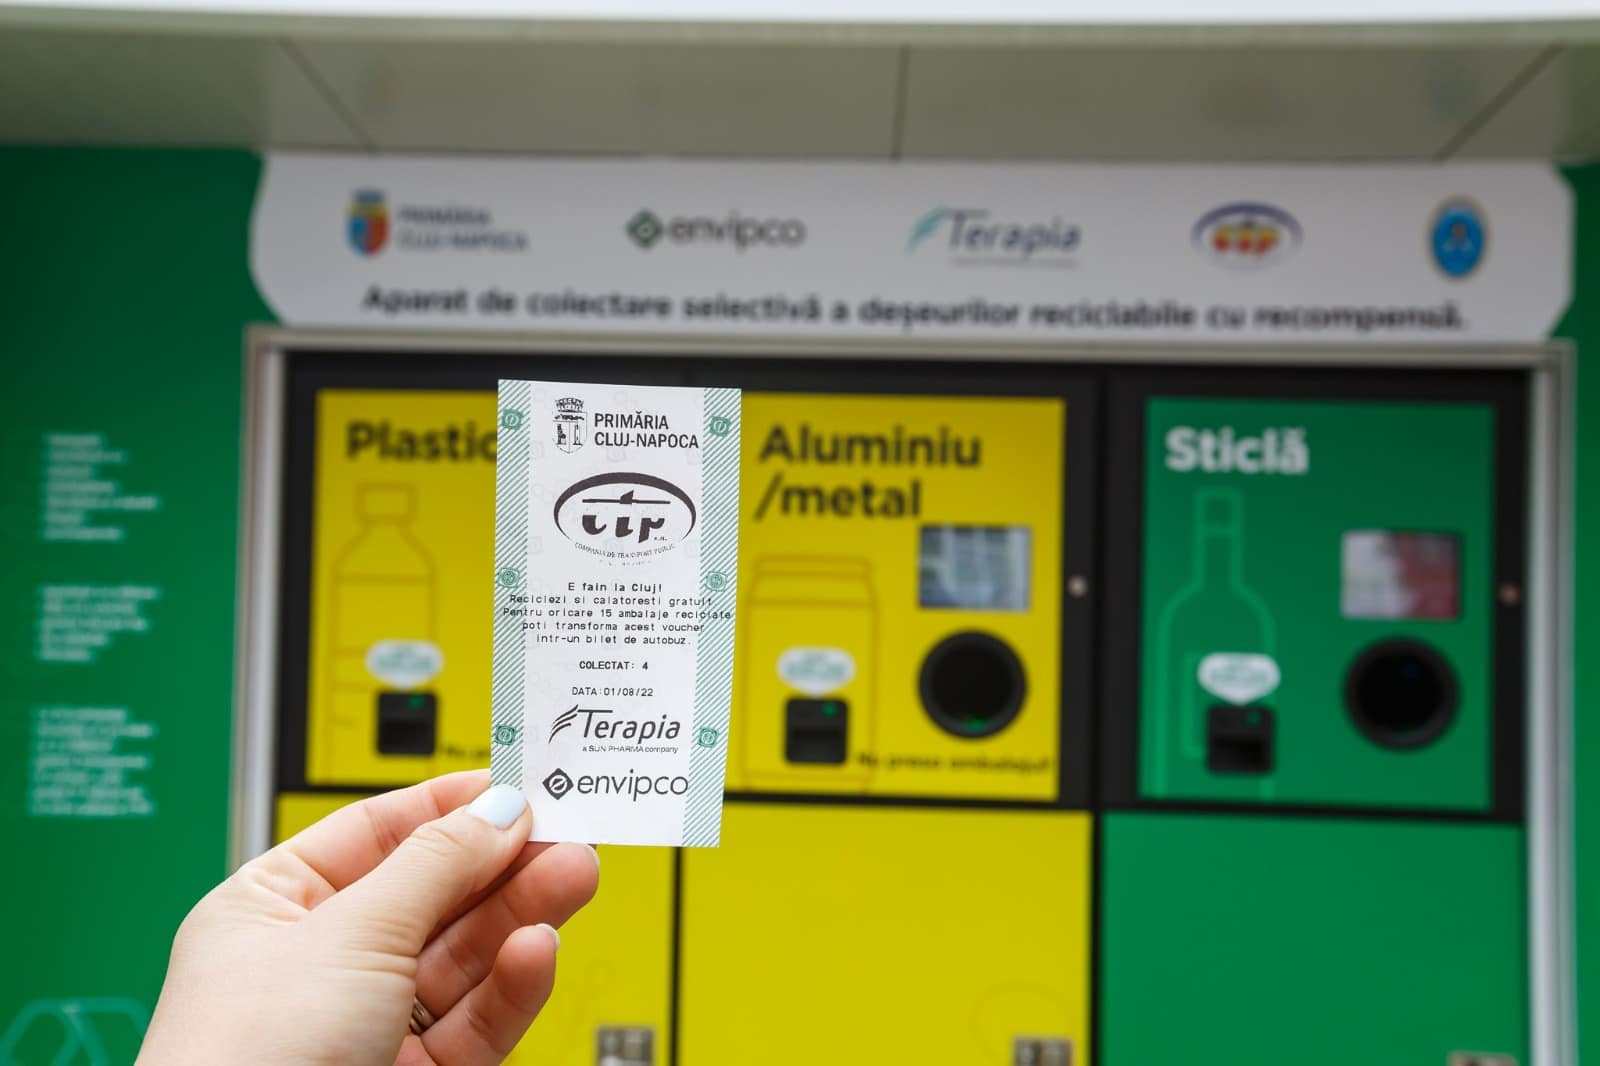 Bilet gratuit de autobuz în schimbul reciclării / Foto: Emil Boc - Facebook